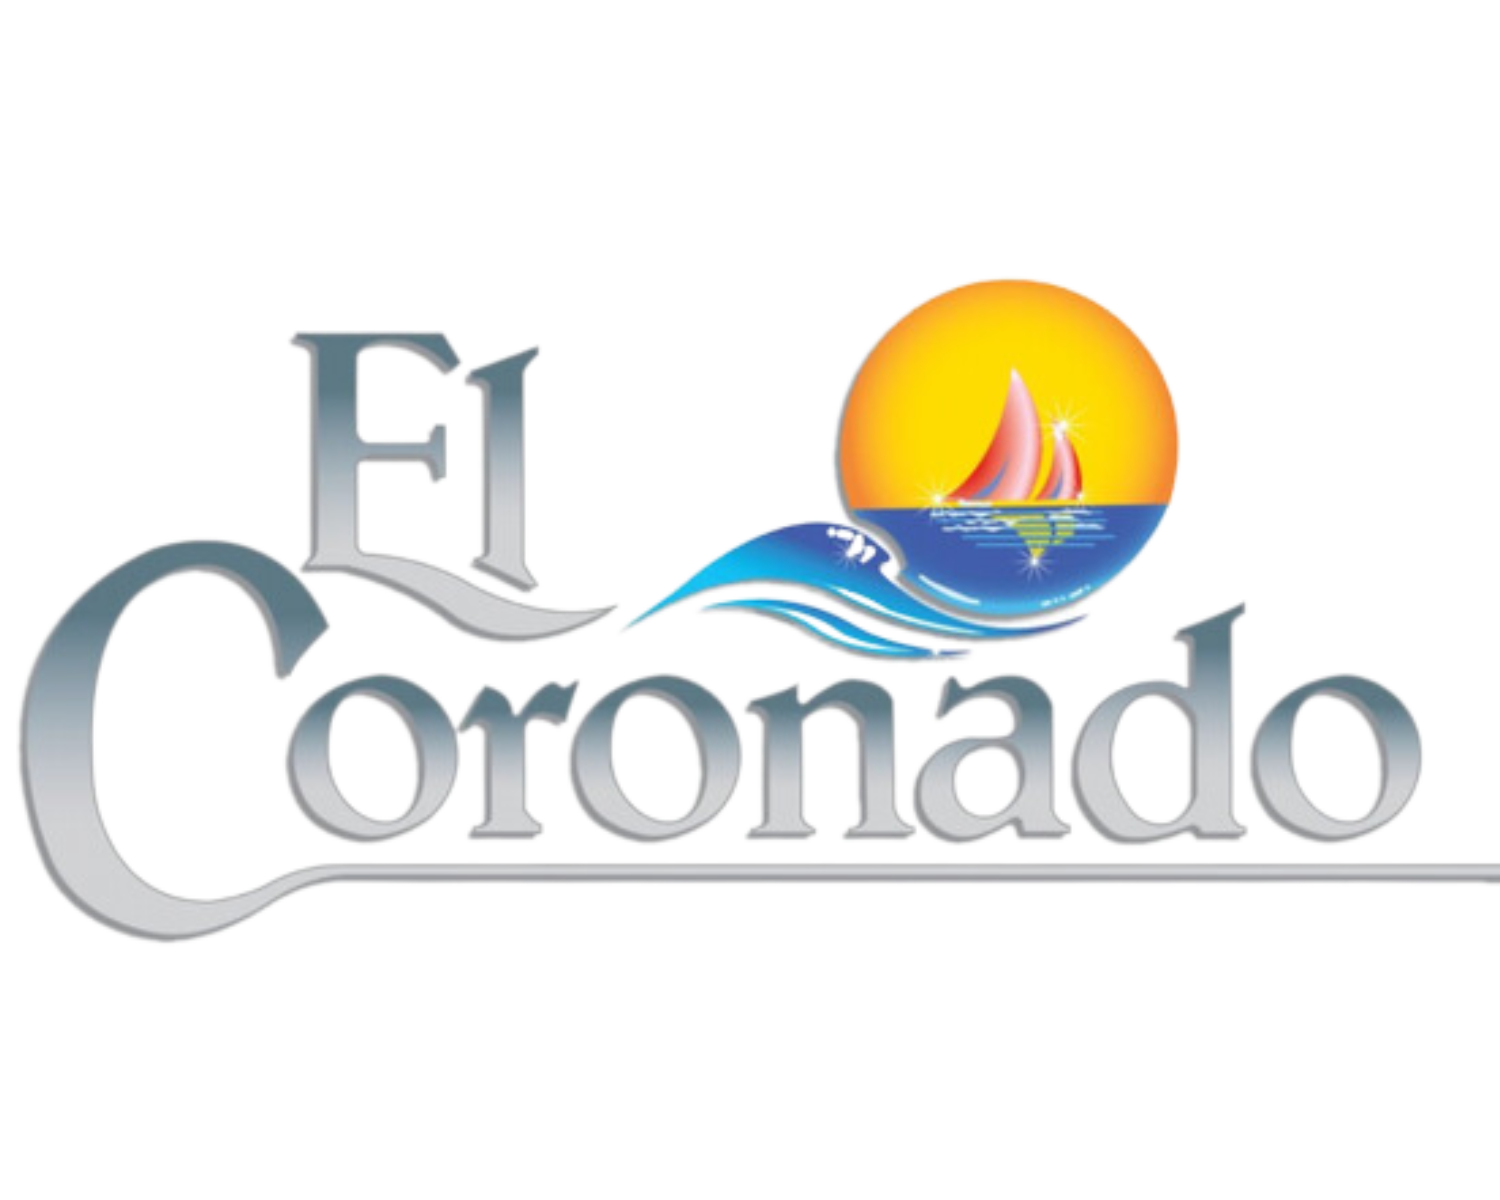 The El Coronado